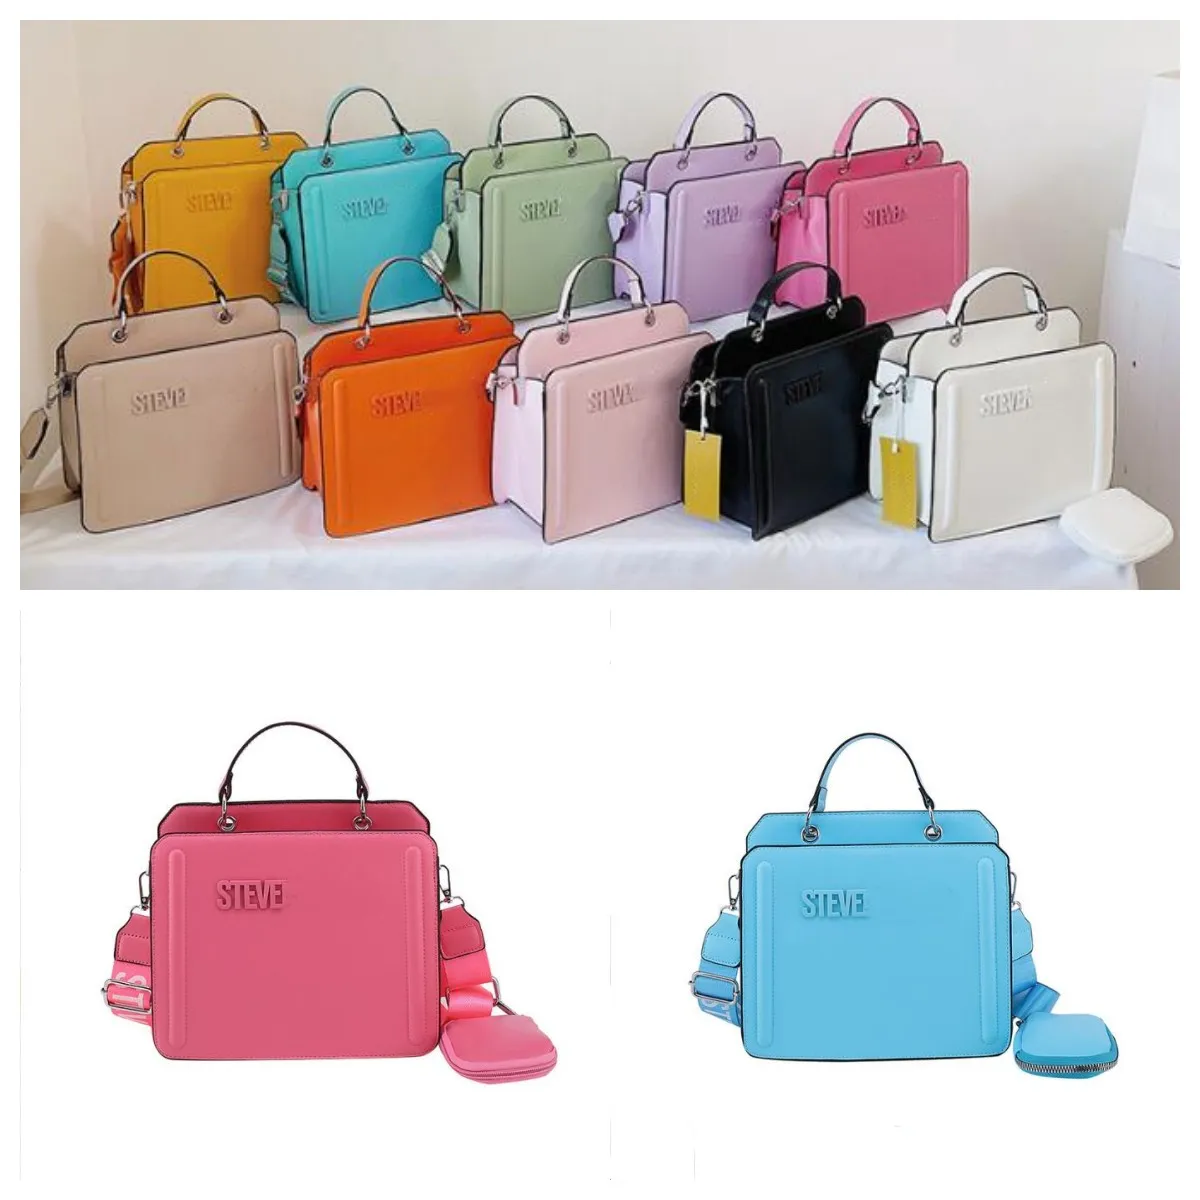 イブニングバッグトートハンドバッグ女性デザイナーショルダースティーブ財布とバケツバッグ2pcs/set luxurys pu革の複合バッグ